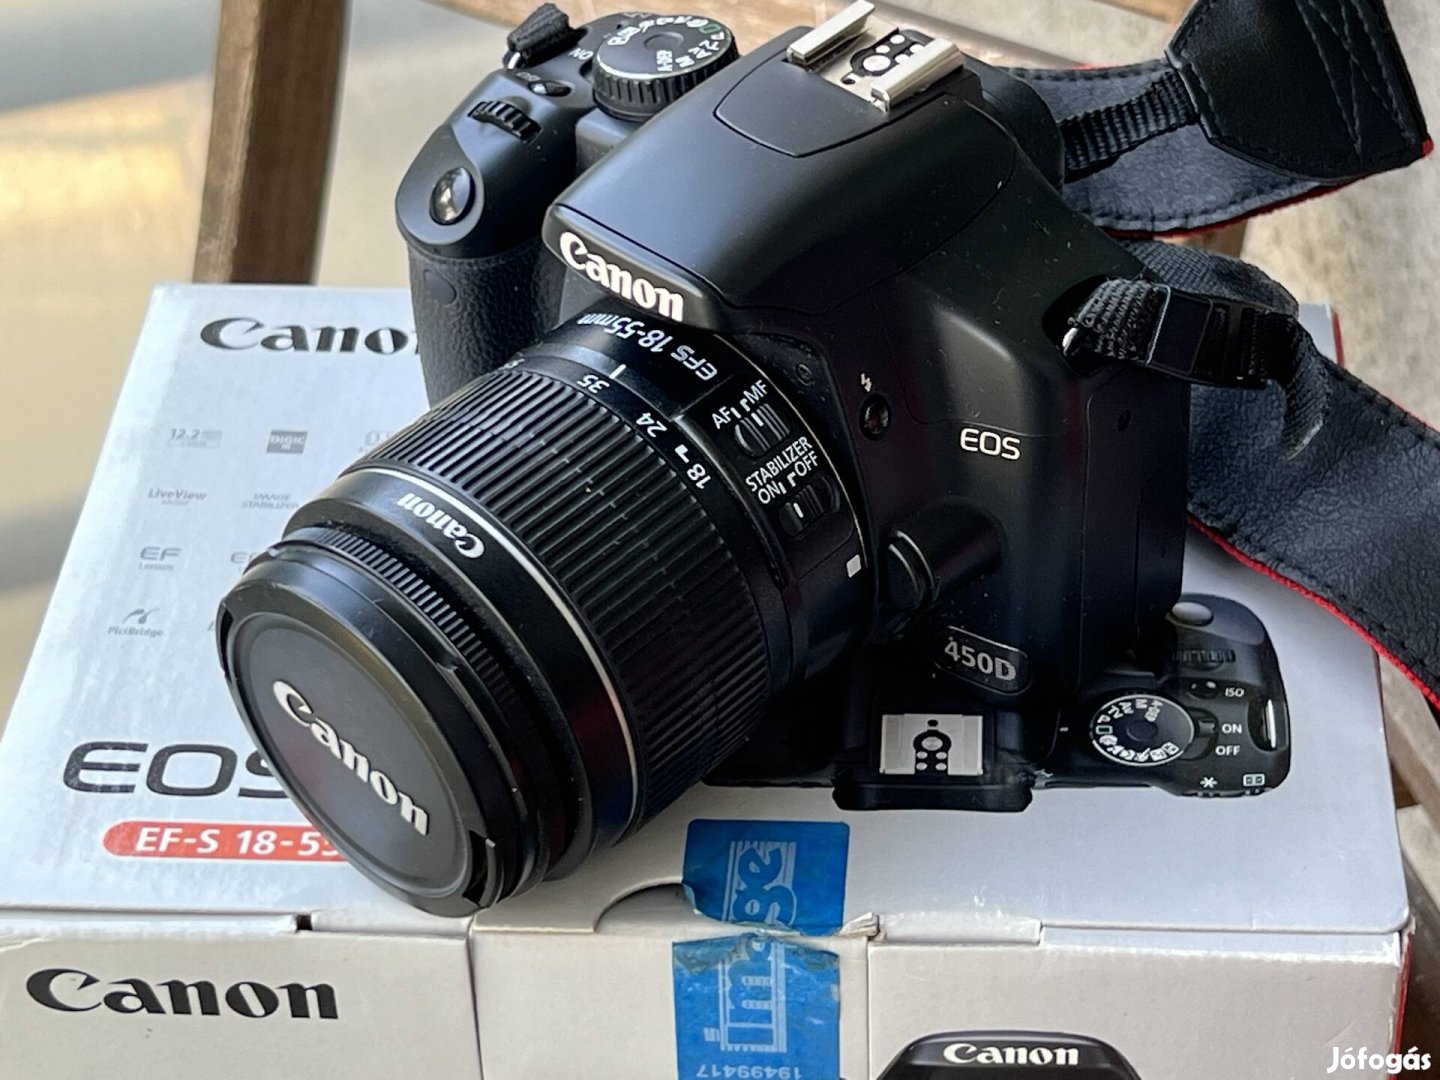 Canon 450D 18-55